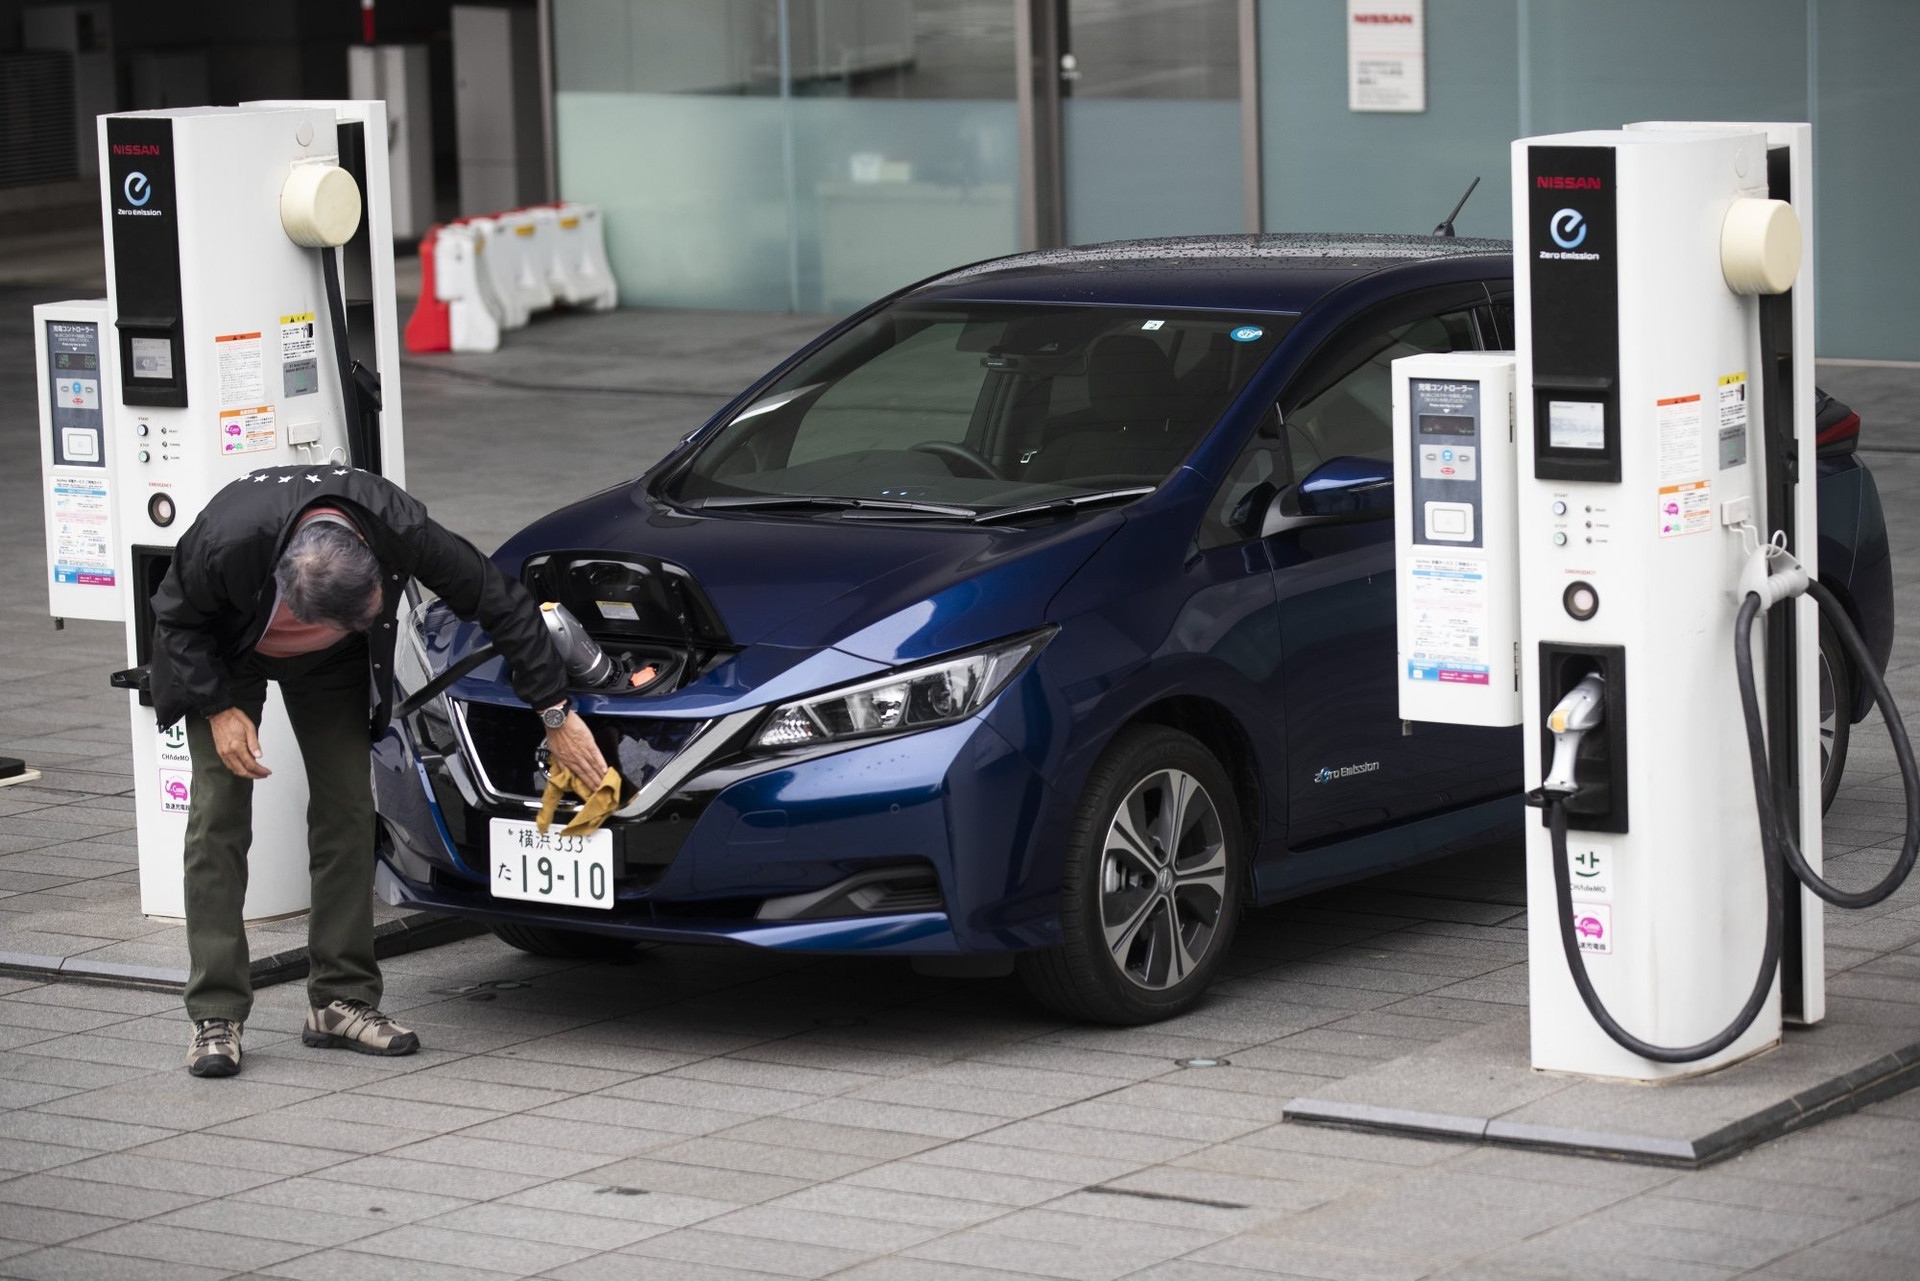 Quá thành công với dòng xe Hybrid, Nhật Bản đã tụt hậu trong mảng ô tô điện như thế nào?